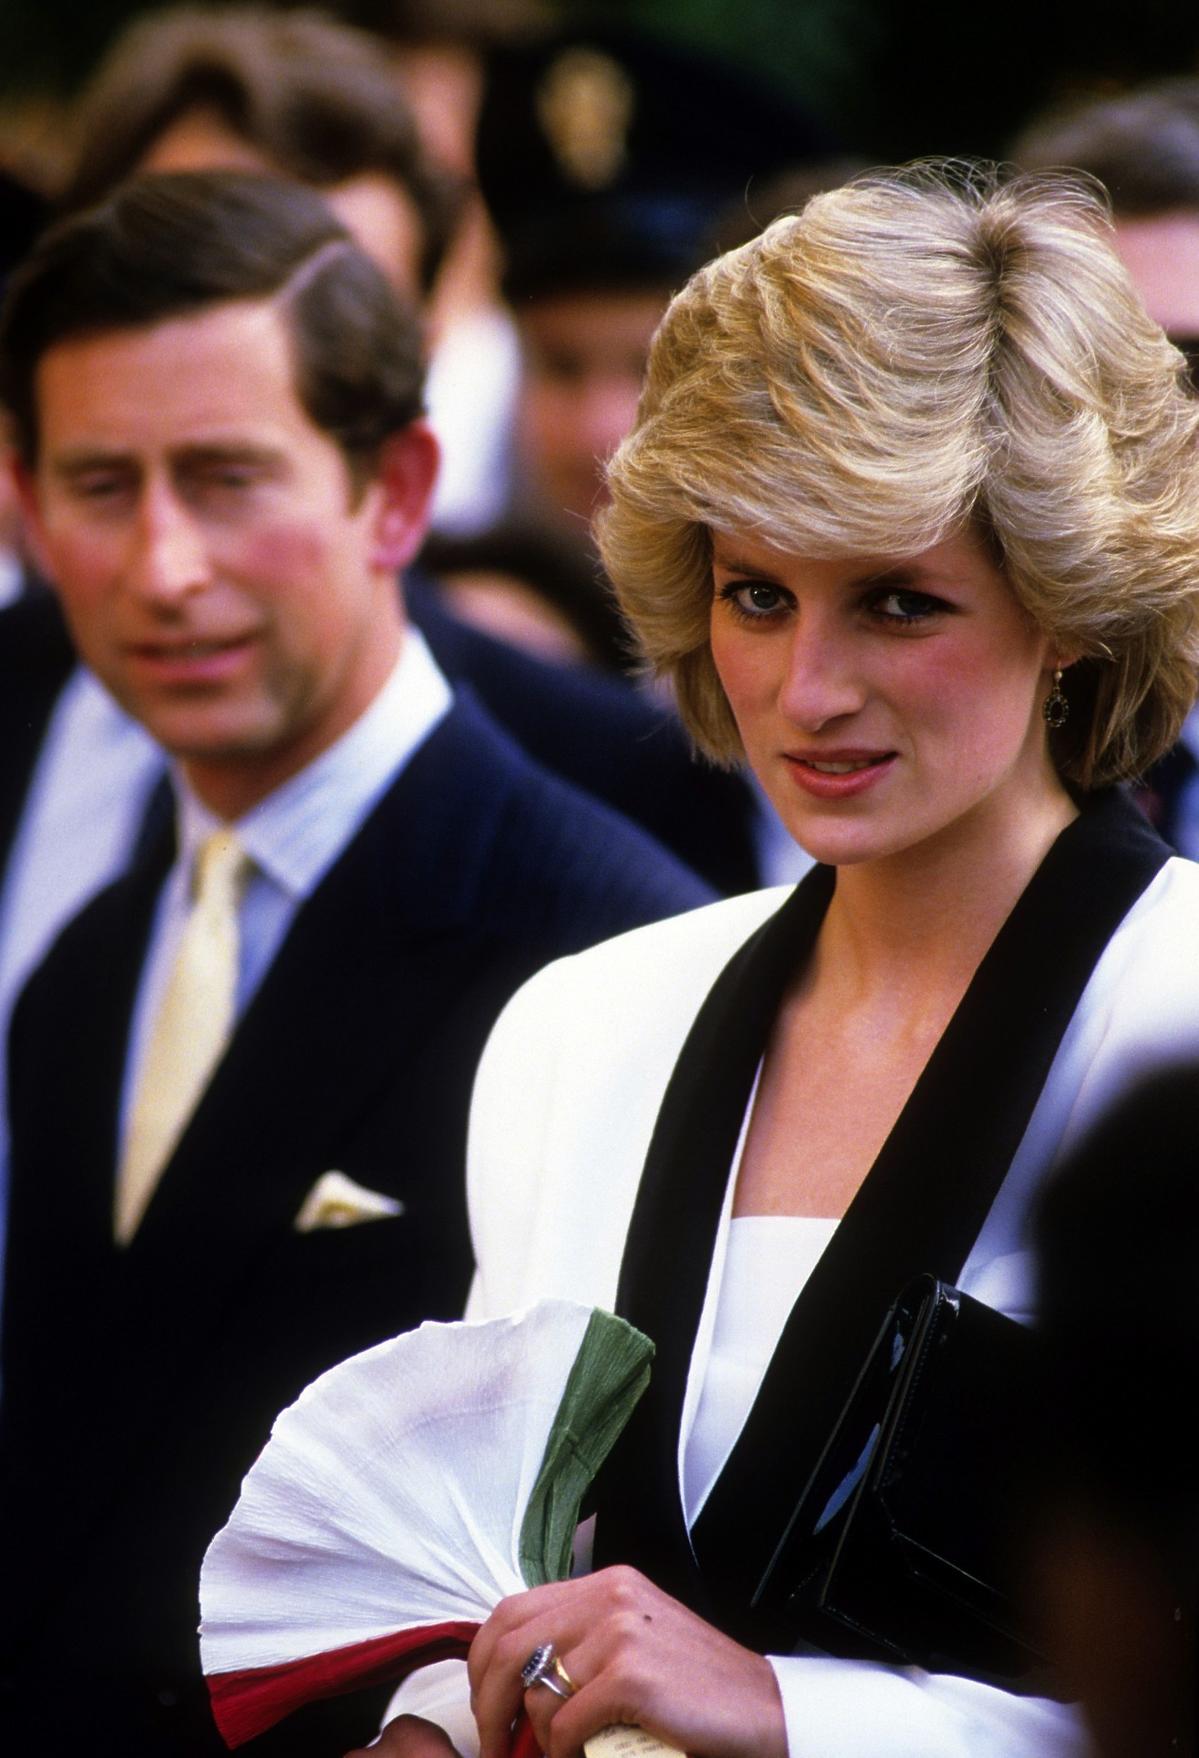 Podczas jednego z wystąpień księżna Diana rozbiła Karolowi butelkę na głowie! Tylko zobaczcie to nagranie